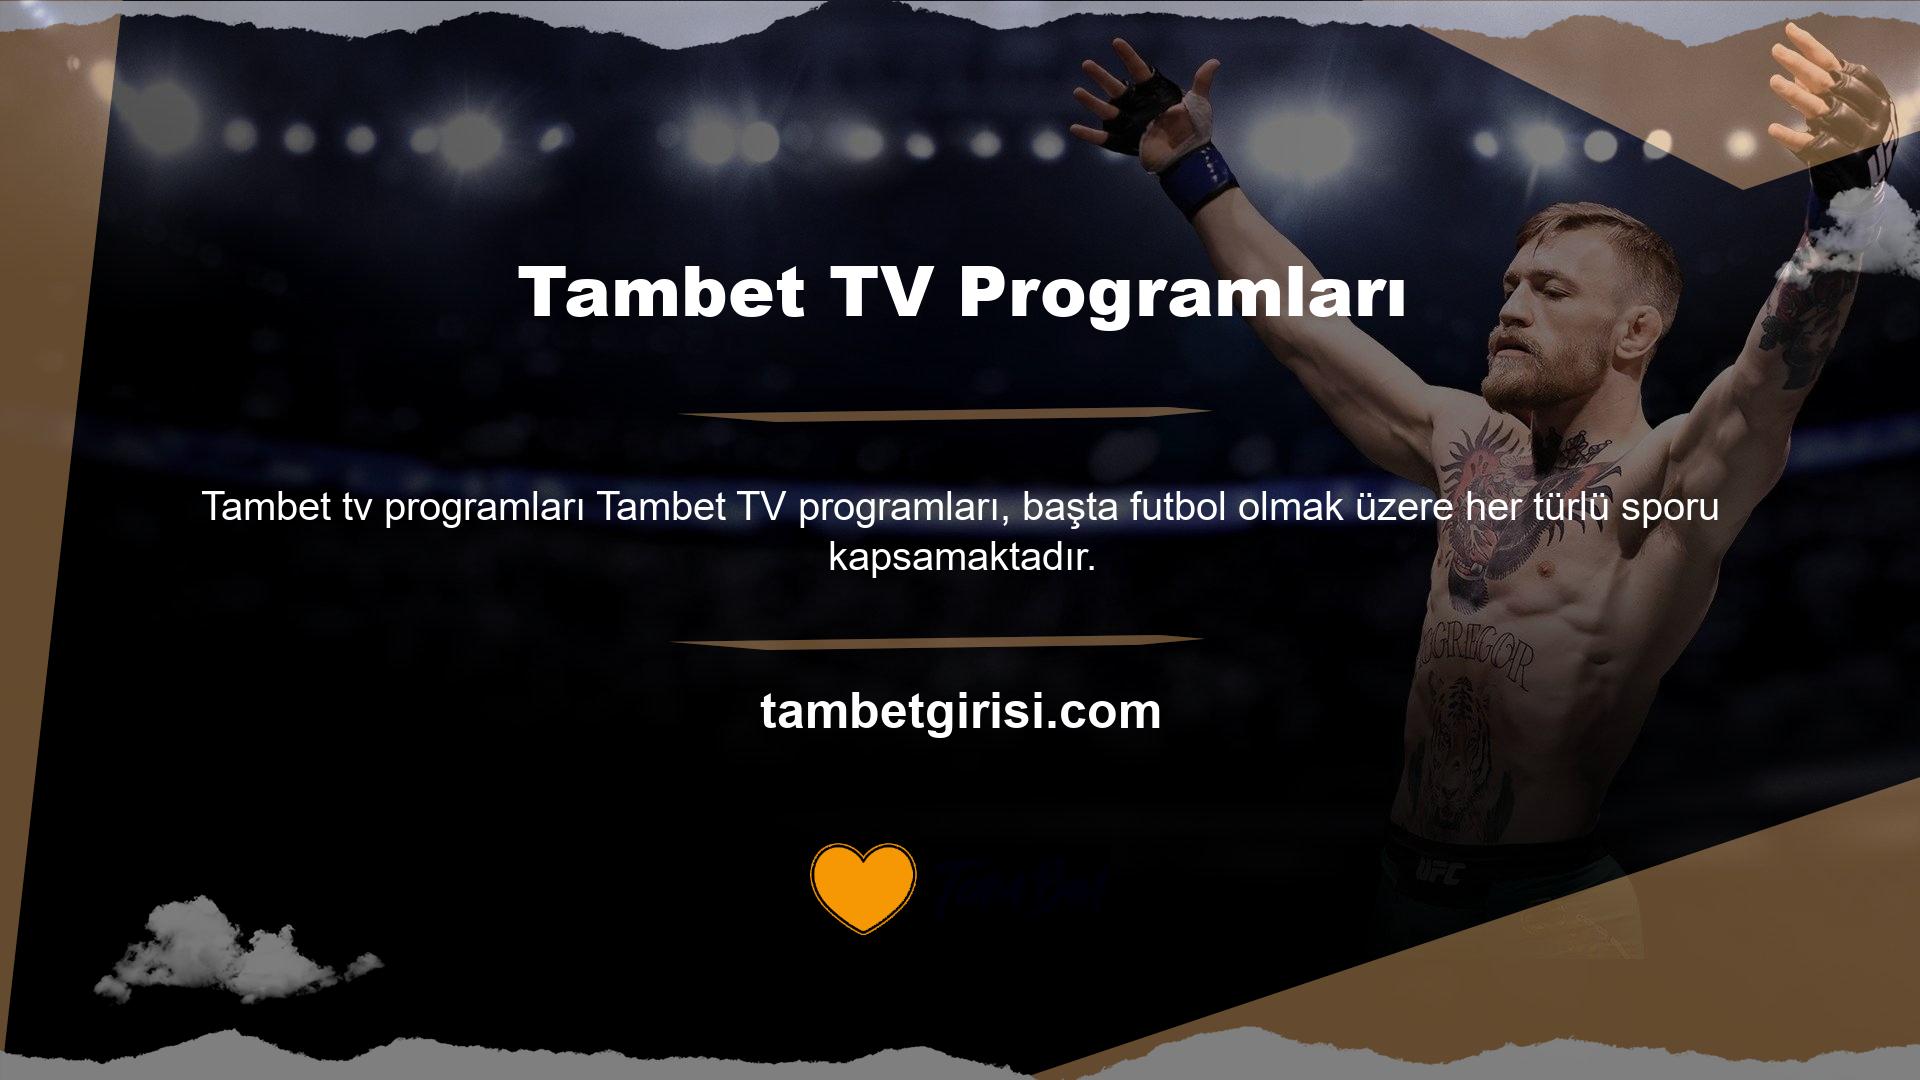 Sitenin sunduğu maç izleme hizmeti, Türkiye liginin yanı sıra diğer ulusal liglerin maçlarının da izlenmesini kolaylaştırmaktadır